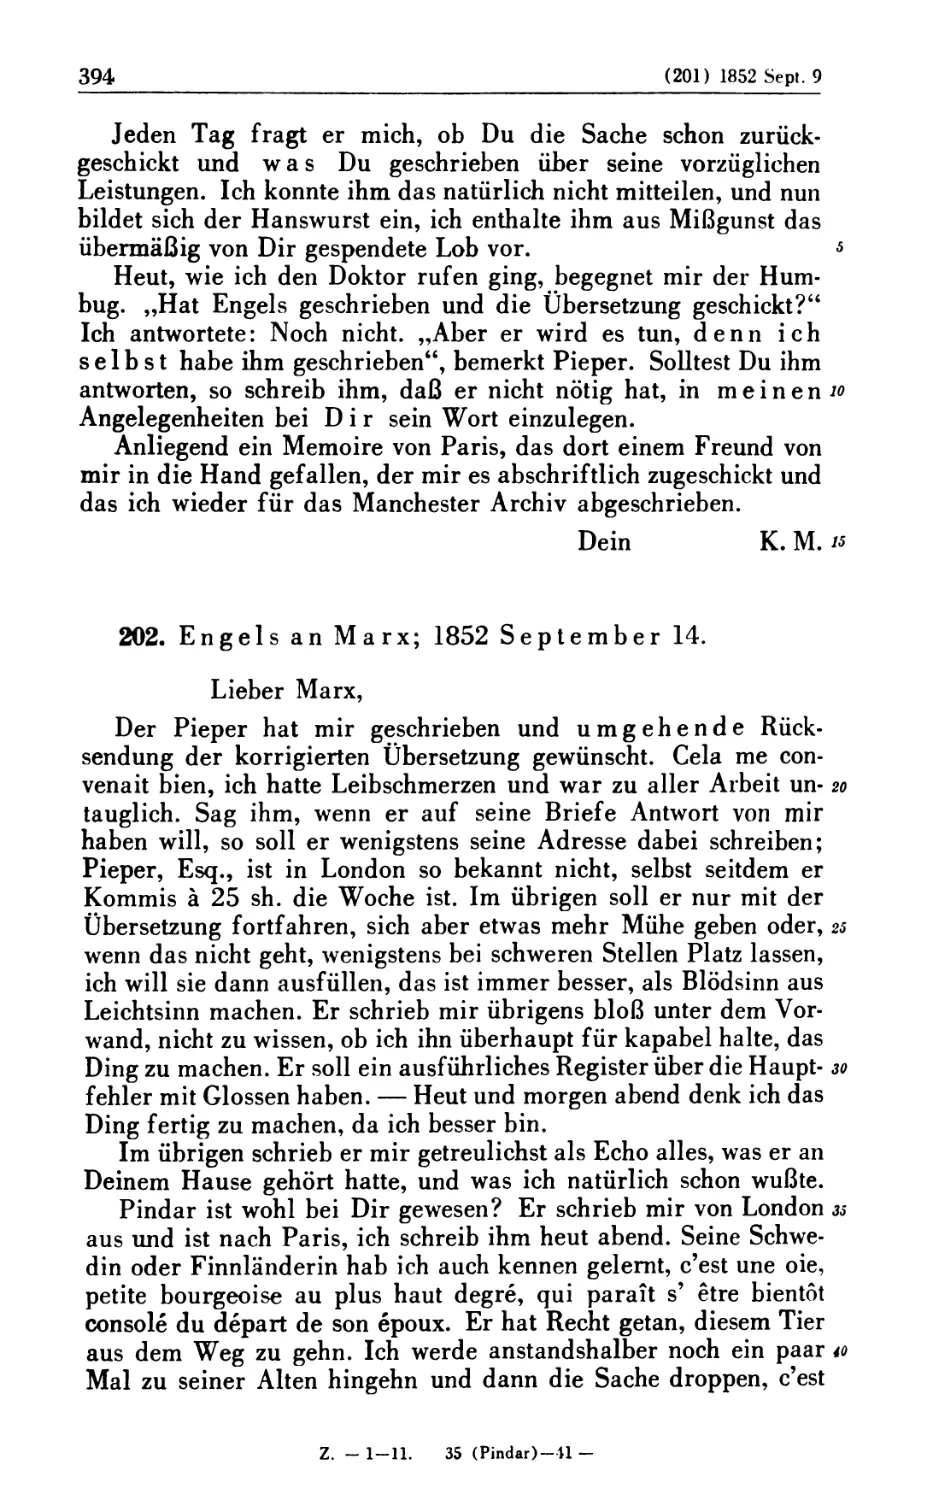 202. Engels an Marx; 1852 September 14